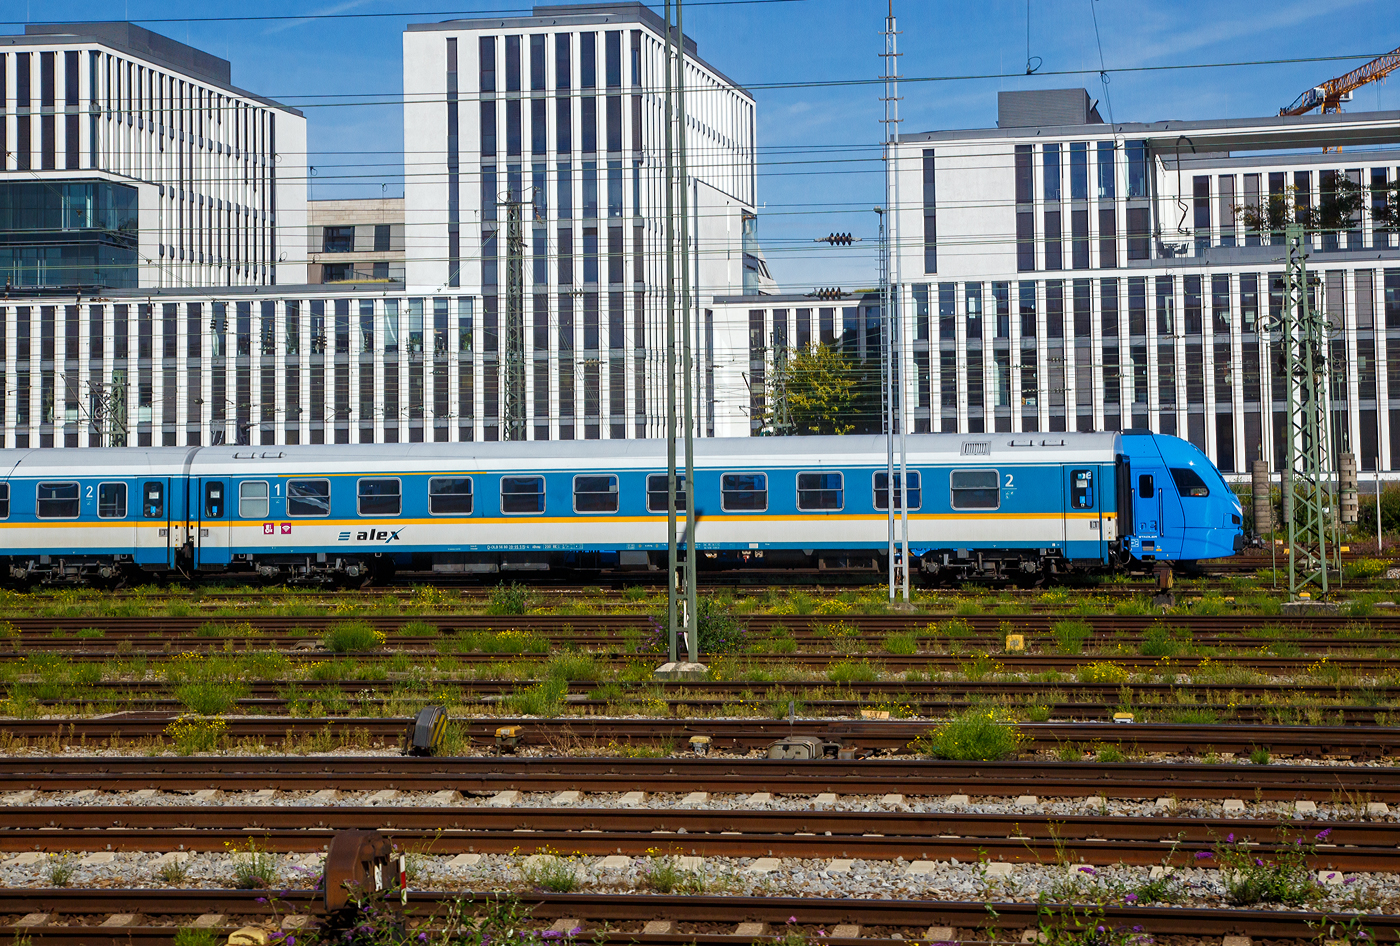 Ist das der neue alex-FLIRT 3.....Nein, ein FLIRT 3 steht nur hinter dem abgestellten alex-Zug.  Der 1./2. Reisezugwagen D-DLB 56 80 39-95 515-4, der Gattung ABvmz, der Die Länderbahn GmbH (alex) abgestellt am 13.09.2022 beim Hbf München. Der Wagen ist der ex DR 51 80 20-95 515 (Amz), ex 51 80 20-95 515-0 D-DB (Bomz 210.2). Aufnahme aus einem einfahrenden IC heraus.

TECHNISCHE DATEN:
Hersteller:  Waggonbau Bautzen (Umbau VIS Halberstadt)
Spurweite: 1.435 mm
Länge über Puffer: 26.400 mm
Wagenkastenlänge: 26.100 mm
Drehzapfenabstand: 19.000 mm
Achsstand im Drehgestell: 2.600 mm
Drehgestellbauart: GP 200-S-Mg
Leergewicht: 41 t
Höchstgeschwindigkeit: 200 km/h
Zulassungen für: RIC / D, A und CH (einspannungsfähig)
Sitzplätze: 20 in der 1. und 29 in der 2. Klasse, 2 Rollstuhlplätze
Abteile: 4 Abteile 1. Klasse; 4 Abteile 2. Klasse; 1 Mehrzweckabteil
Toiletten: 2, davon 1 behindertengerecht
Bremsbauart: KE-GPR-Mg

Die Wagen der ehemaligen Gattung Amz 210 und Amz 210.1 sind die jüngsten Fahrzeuge im Bestand des ALEX. Die Wagenserie entstand 1991 beim Waggonbau Bautzen (ehemals LOWA, später Deutsche Waggonbau AG (DWA), jetzt Bombardier) im Auftrag der Deutschen Reichsbahn. Sie entstanden nach dem Vorbild der Ame-Wagen des RAW Halberstadt (spätere Am 201) und den UIC-Z-Normen. Es wurden insgesamt 40 Wagen gebaut, die ab Werk im blauen Interregio-Farbschema lackiert waren, innen jedoch noch klassische Schnellzugwagen waren. Eingesetzt wurden sie bis 2002 im Interregioverkehr. Zum Schluss liefen sie teilweise noch in Regionalexpresszügen, im Jahr 2003 wurde diese Wagenserie (gerade einmal 12 Jahre alt!) komplett ausgemustert. 22 Wagen dieses Typs konnte die Regentalbahn von der DB kaufen, 2 Wagen wurden als Ersatzteilspender verwendet, so dass sich aktuell 20 Wagen im Bestand des ALEX befinden. 

Die Wagen besaßen ursprünglich 10 Abteile mit je 6 Sitzplätzen, beim ALEX wurden vier Abteile zur 1.Klasse mit je 5 Sitzplätzen, vier Abteile zur 2.Klasse mit je 6 Sitzplätzen, das zehnte Abteil entfiel zugunsten eines kleinen Mehrzweckbereichs. Einige Wagen laufen als rein zweitklassige Wagen.

Zur Einsetzbarkeit: Die Wagen mit den Ziffern 90 an 
der 7. und 8. Stelle der Wagennummer sind mehrspannungsfähig, die Wagen mit den Ziffern 95 an dieser Stelle (wie dieser hier) sind nur einspannungsfähig - die Versorgung der Zugsammelschiene ist nur mit der in Deutschland üblichen Spannung von 1000V und 16 2/3 Hz möglich
